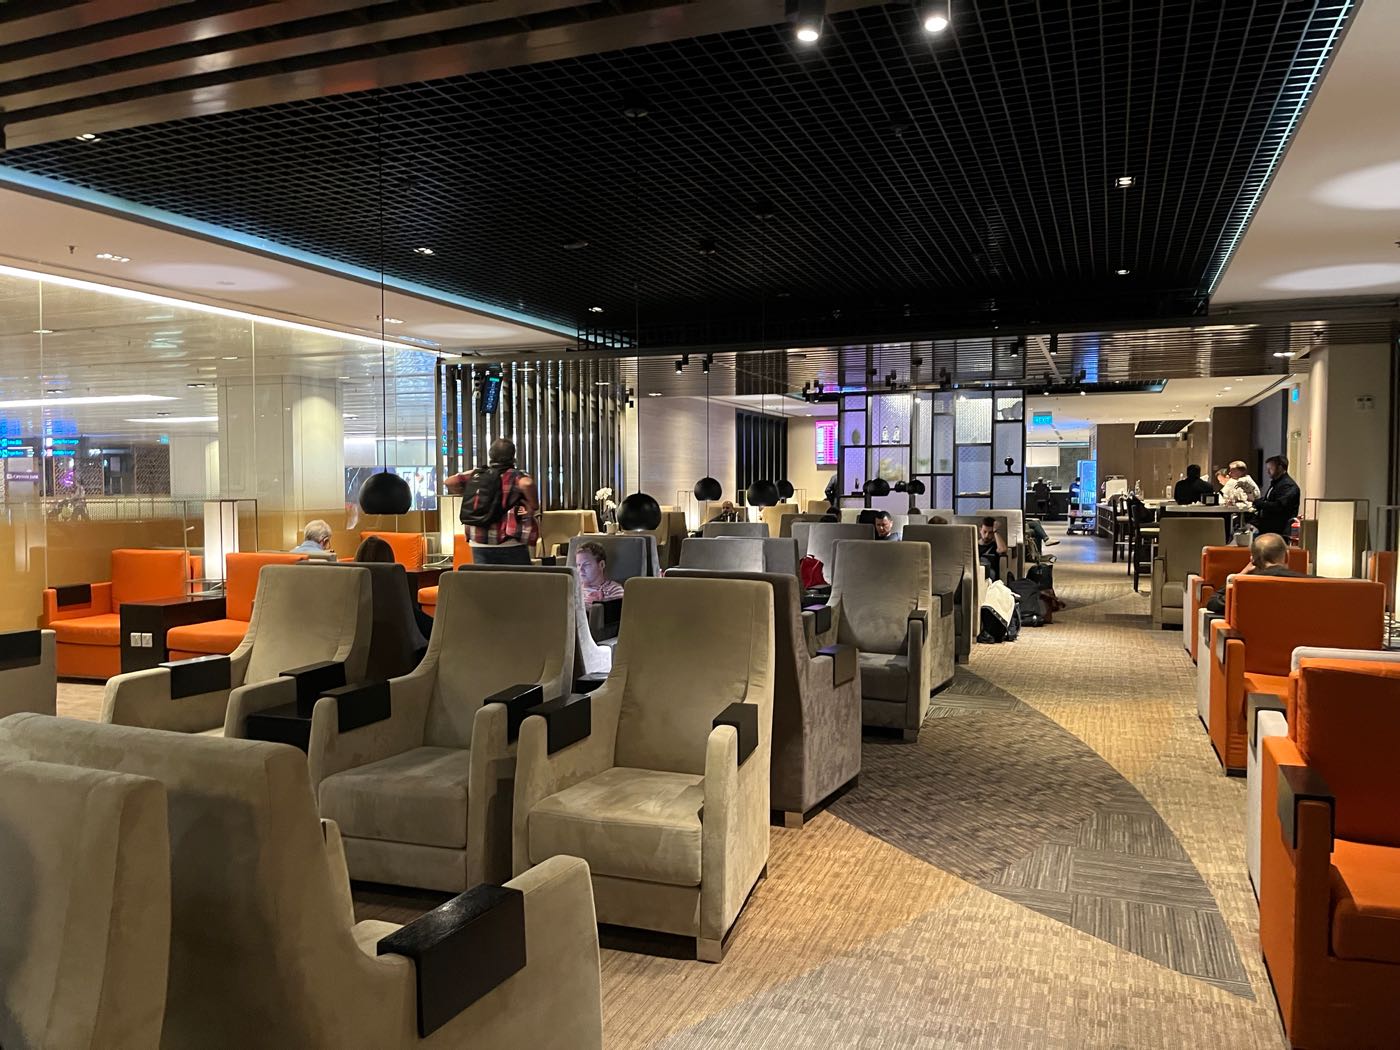 貴賓室 新加坡樟宜機場 T1 Marhaba Lounge 龍騰卡 PP卡 進貴賓室  - 一口冒險 Bitesized Adventure